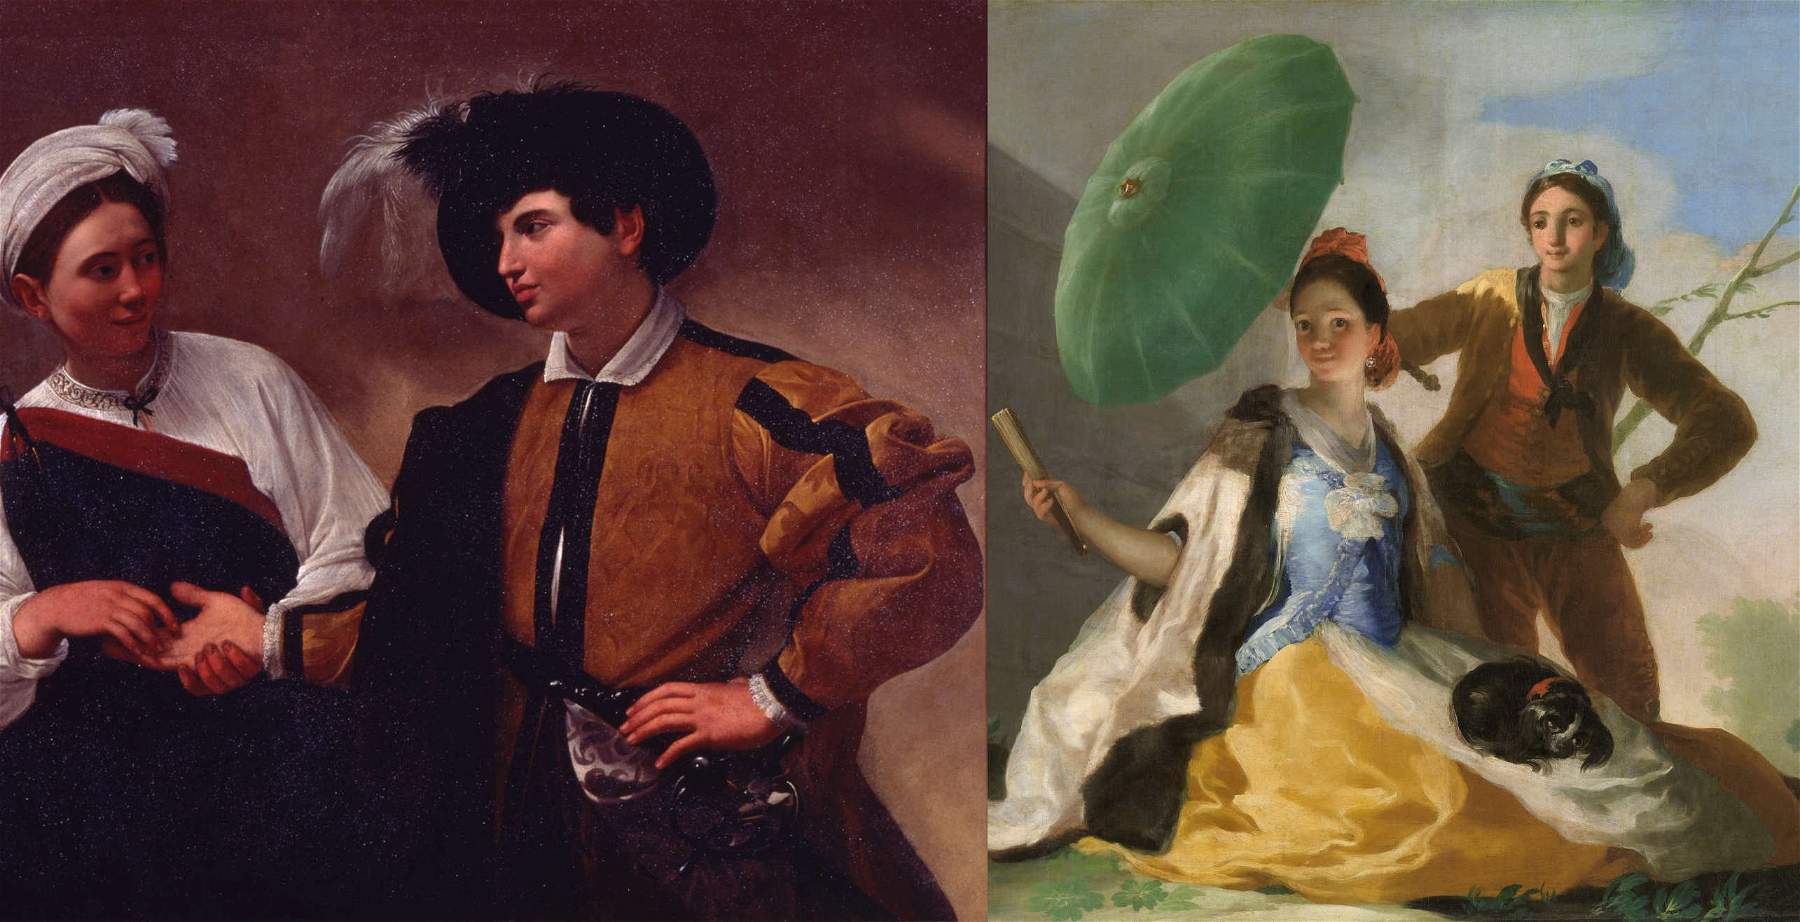 Roma, Caravaggio y Goya comparados en una exposición en los Museos Capitolinos